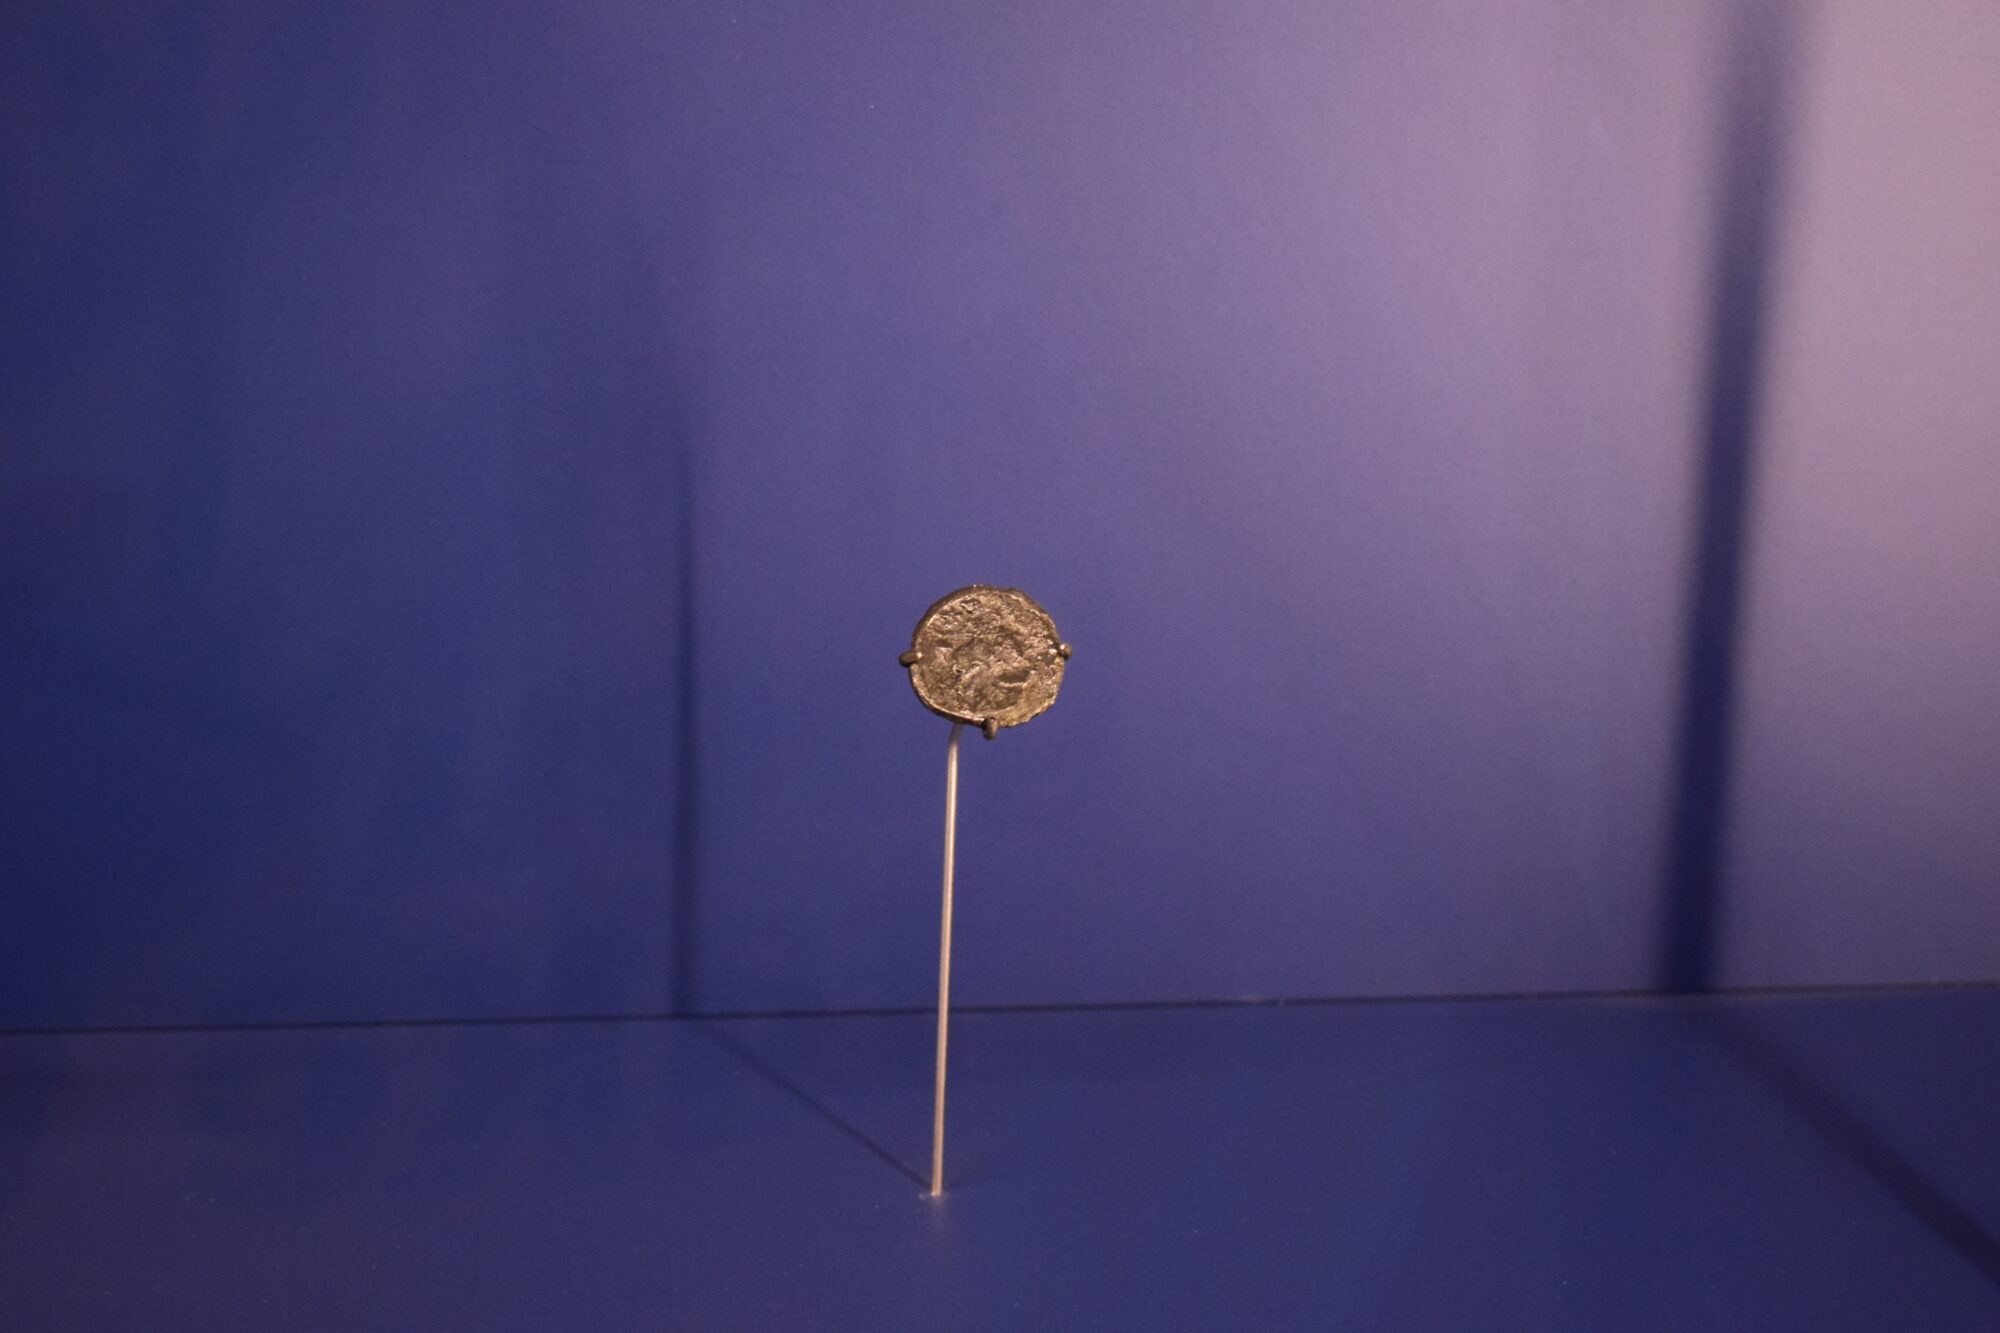 Imatge de la moneda votiva ibèrica localitzada a la carlinga (cavitat per allotjar el peu del pal) de Cap de Vol. Arxiu MAC-CASC.